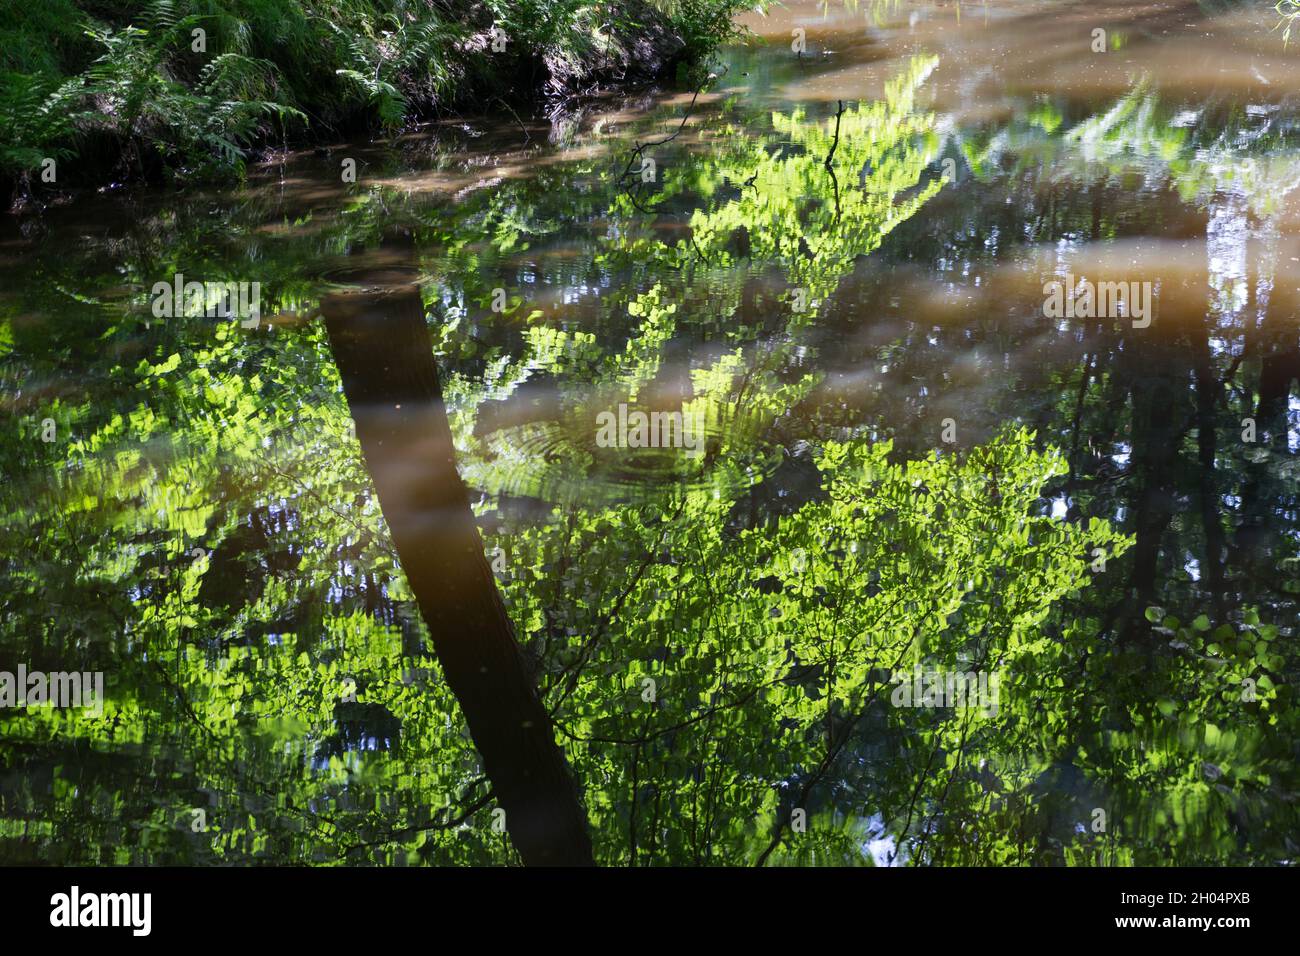 Landschaftlich schöne Sommerspiegelung von grünen Blättern und Farn im ruhigen Wasser eines Parks im deutschen Naturhintergrund Stockfoto